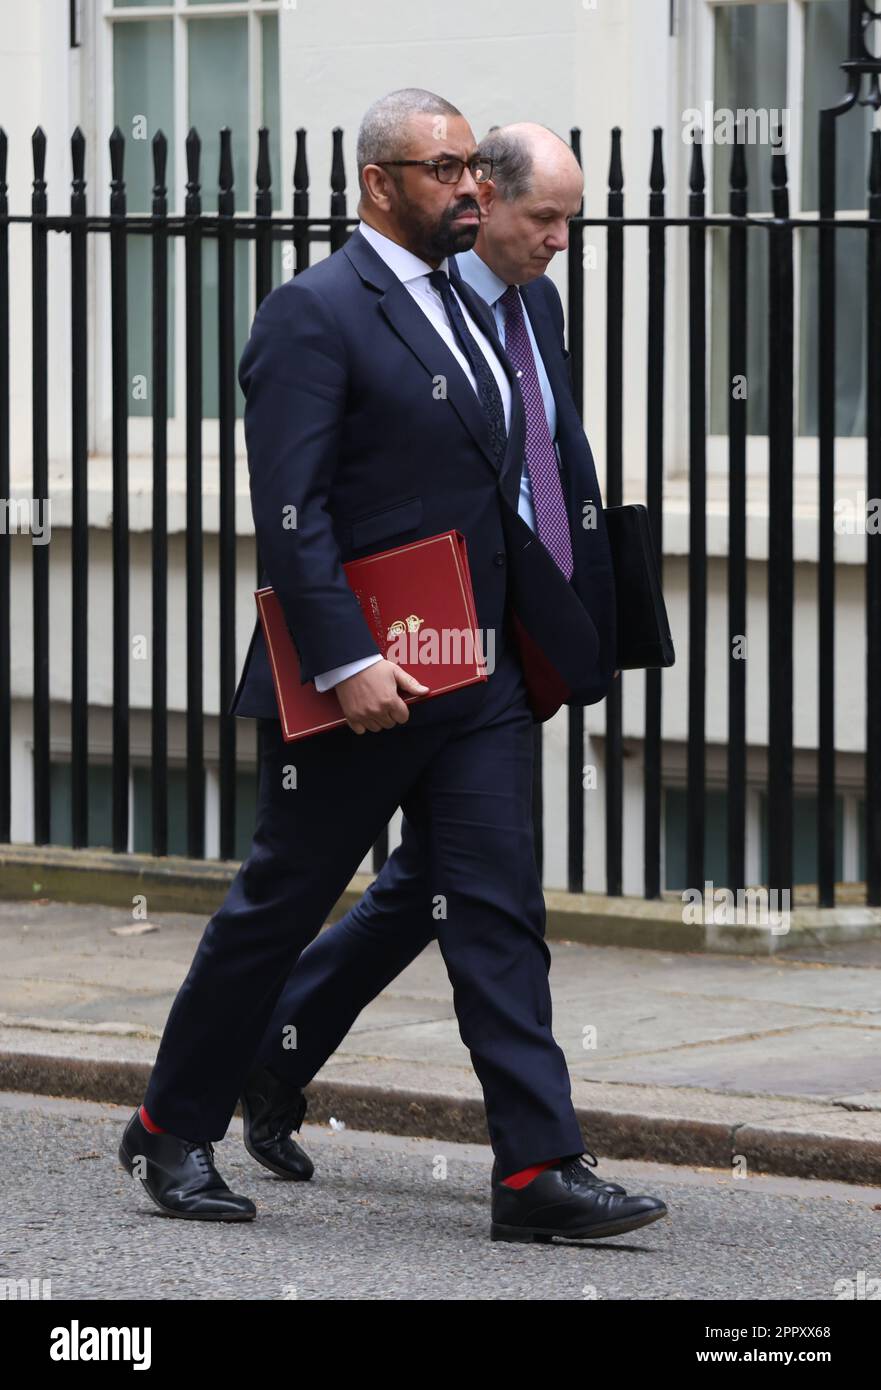 Le secrétaire aux Affaires étrangères James (à gauche) arrive habilement à Downing Street à Londres. Le vice-premier ministre Oliver Dowden présidera une réunion de Cobra sur l'évacuation des ressortissants britanniques du Soudan. Date de la photo: Mardi 25 avril 2023. Banque D'Images